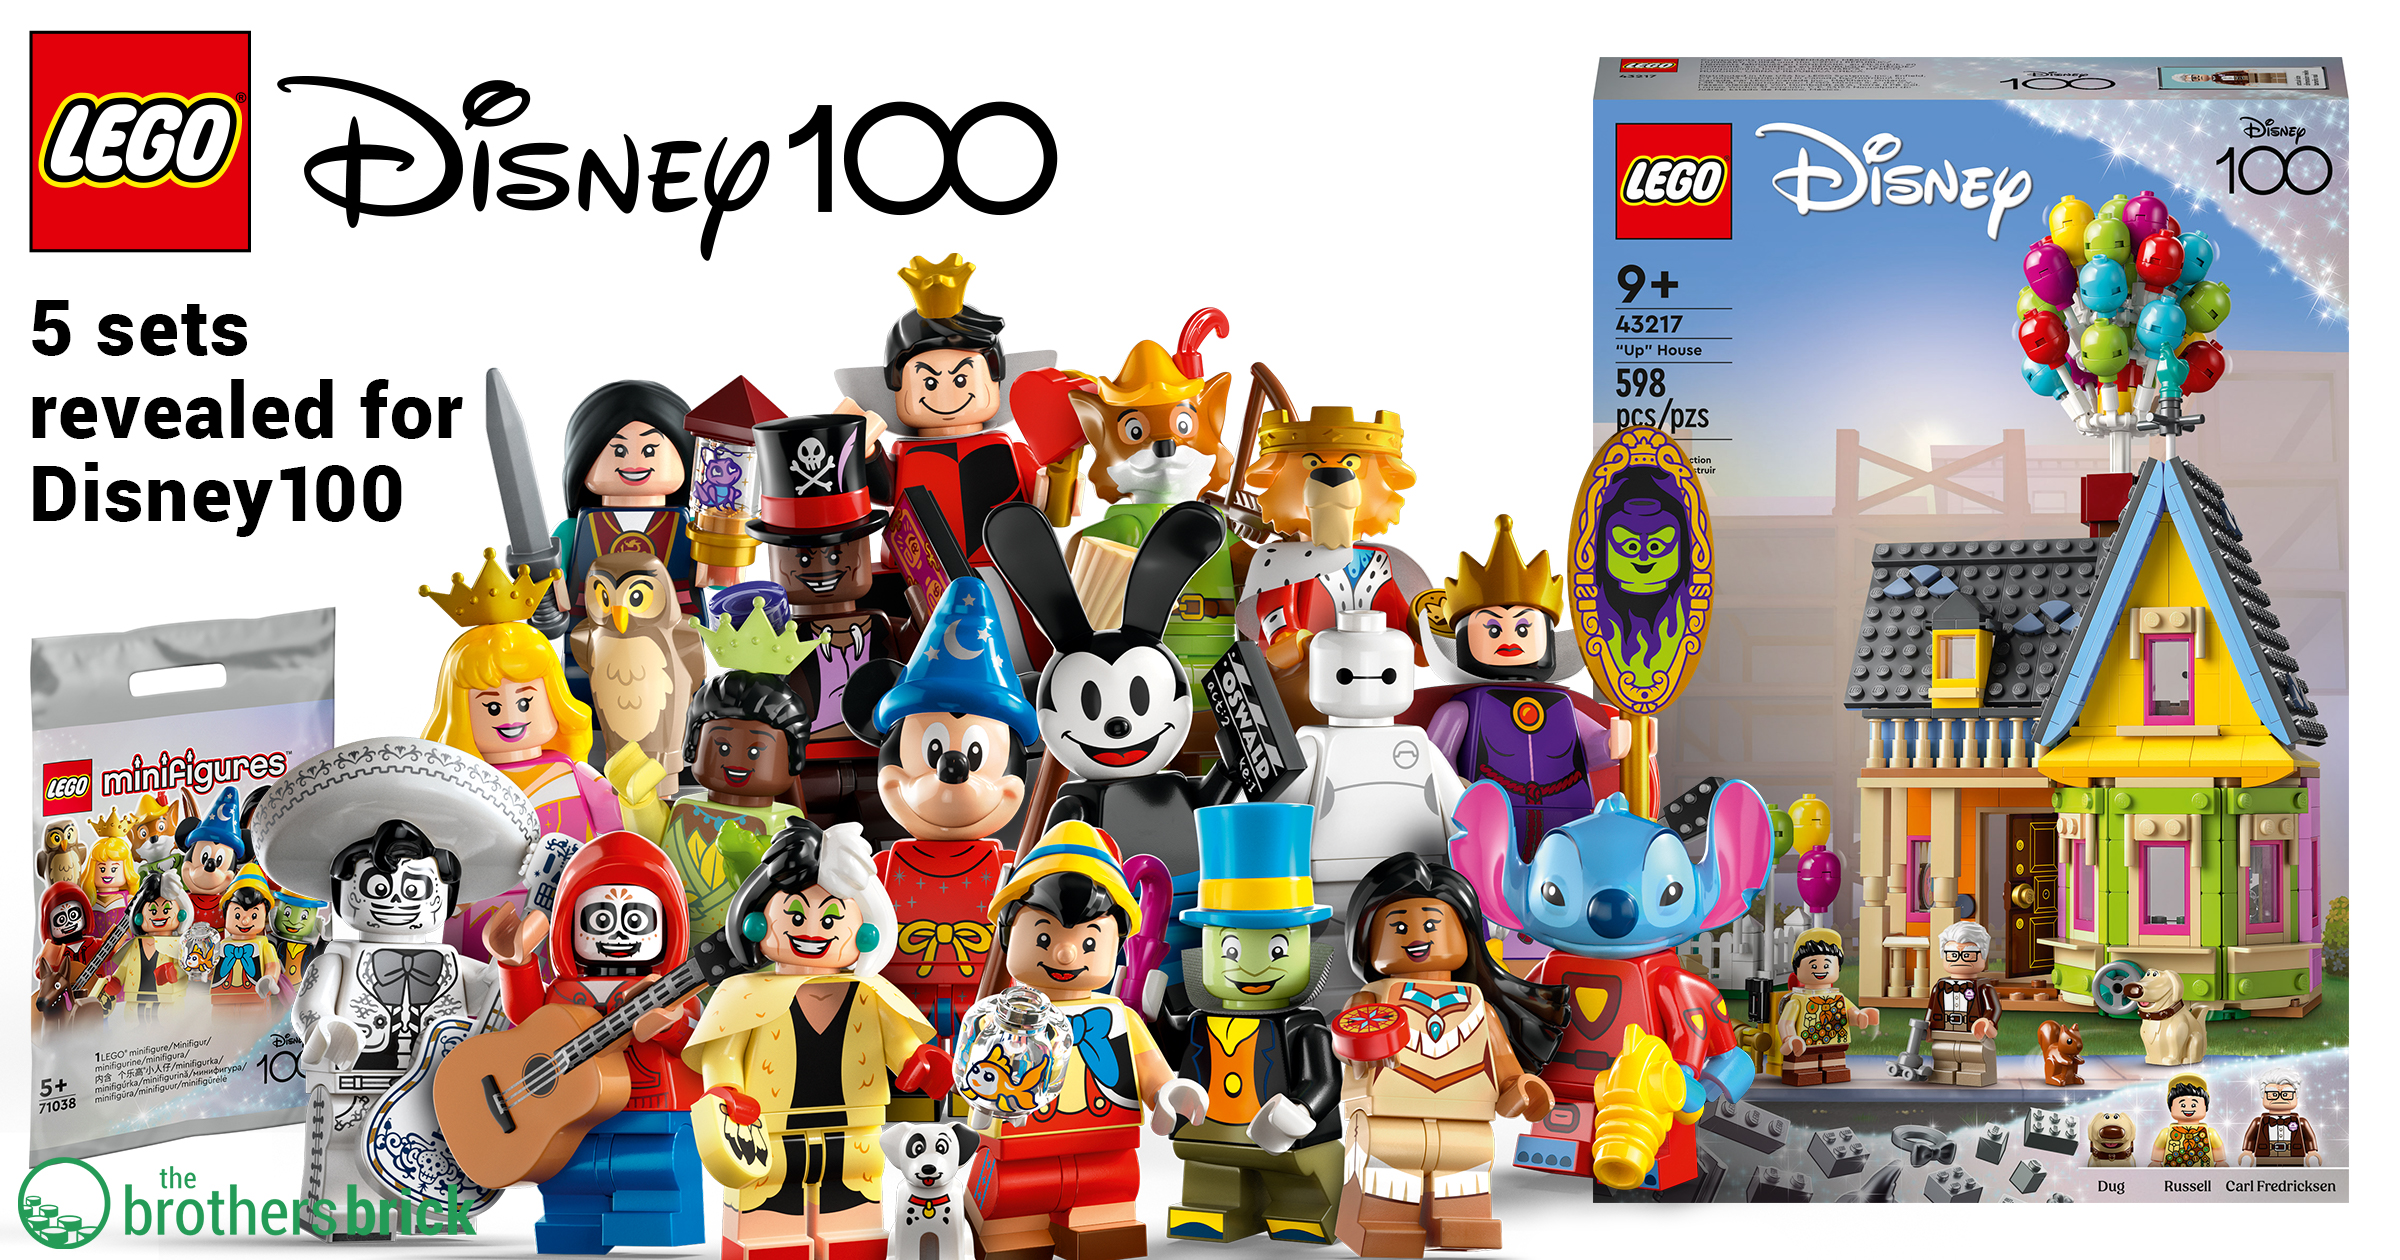 LEGO-Disney-100-Anniversary-Celebration-Sets-TBB-Cover-KJHHN.jpg